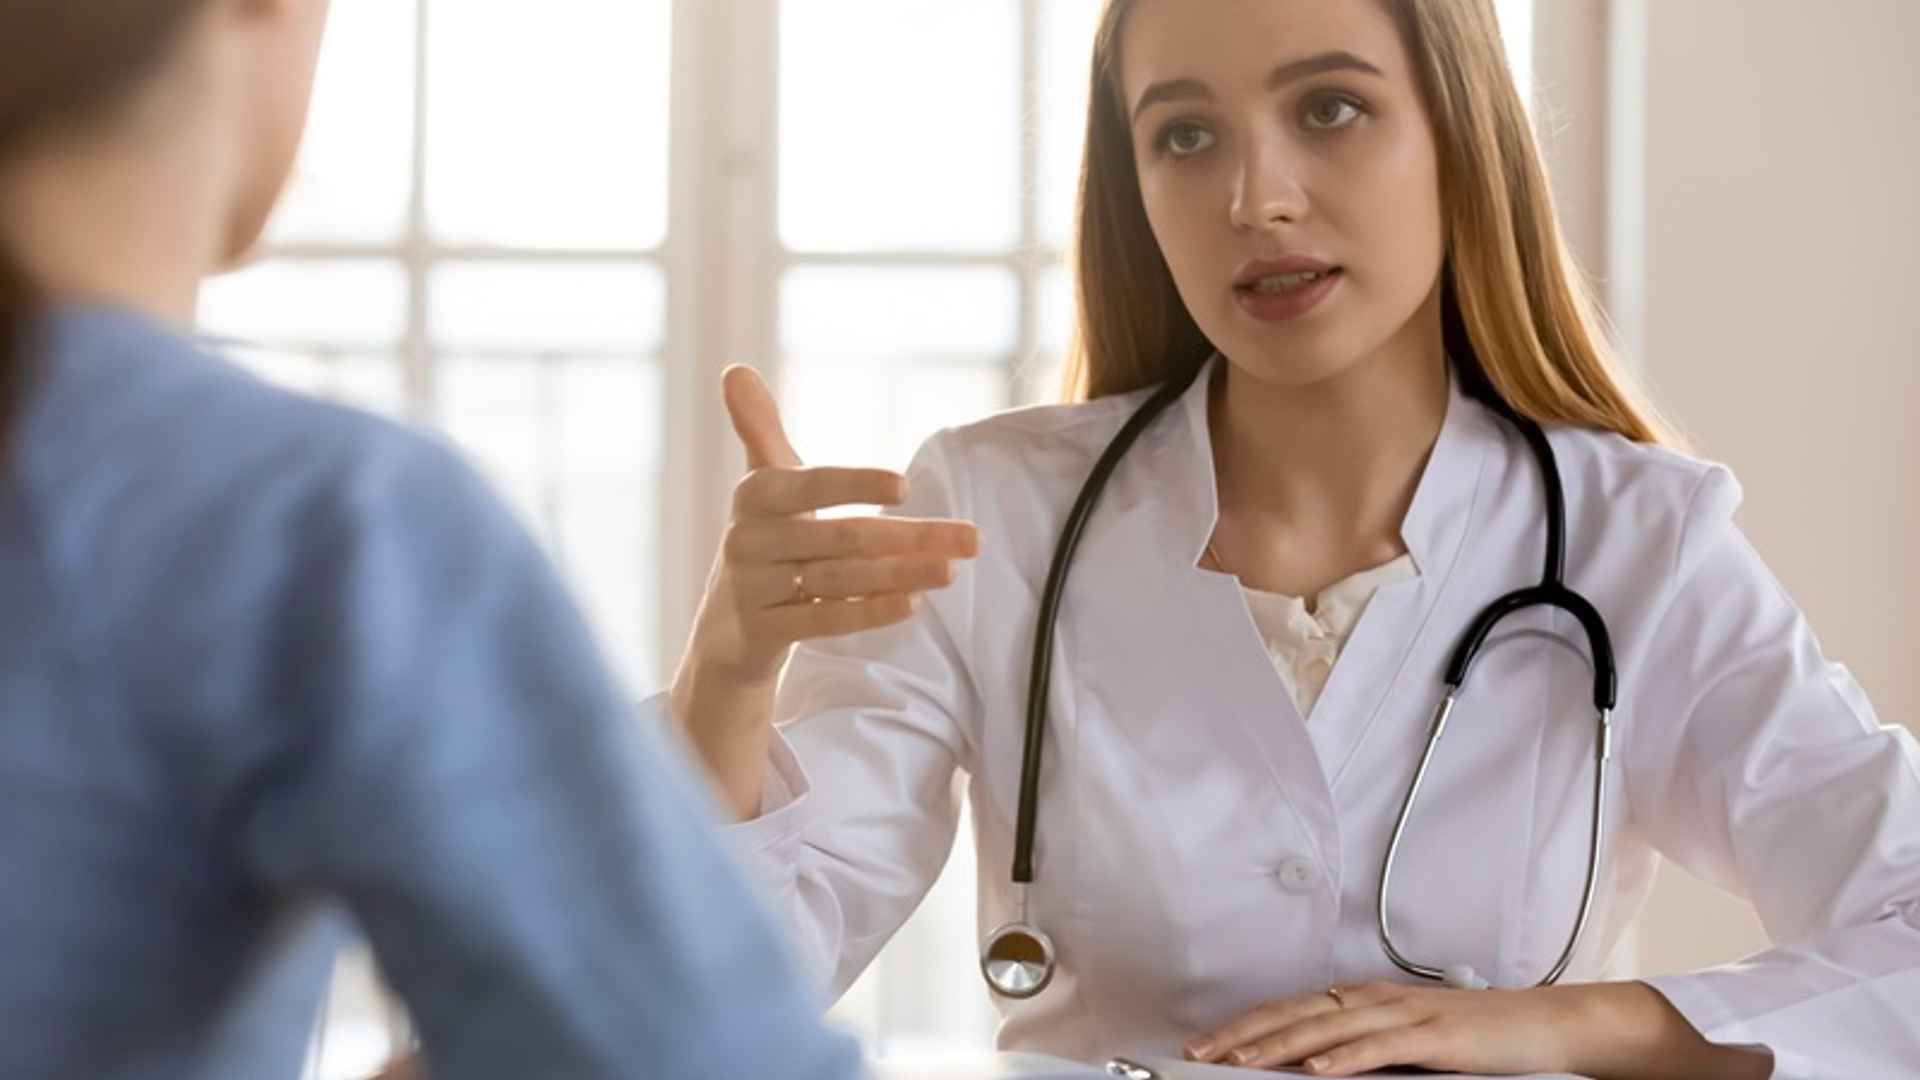 Diagnosi mancata di endometriosi: nessuna condanna per il ginecologo di fiducia, manca la prova del nesso causale